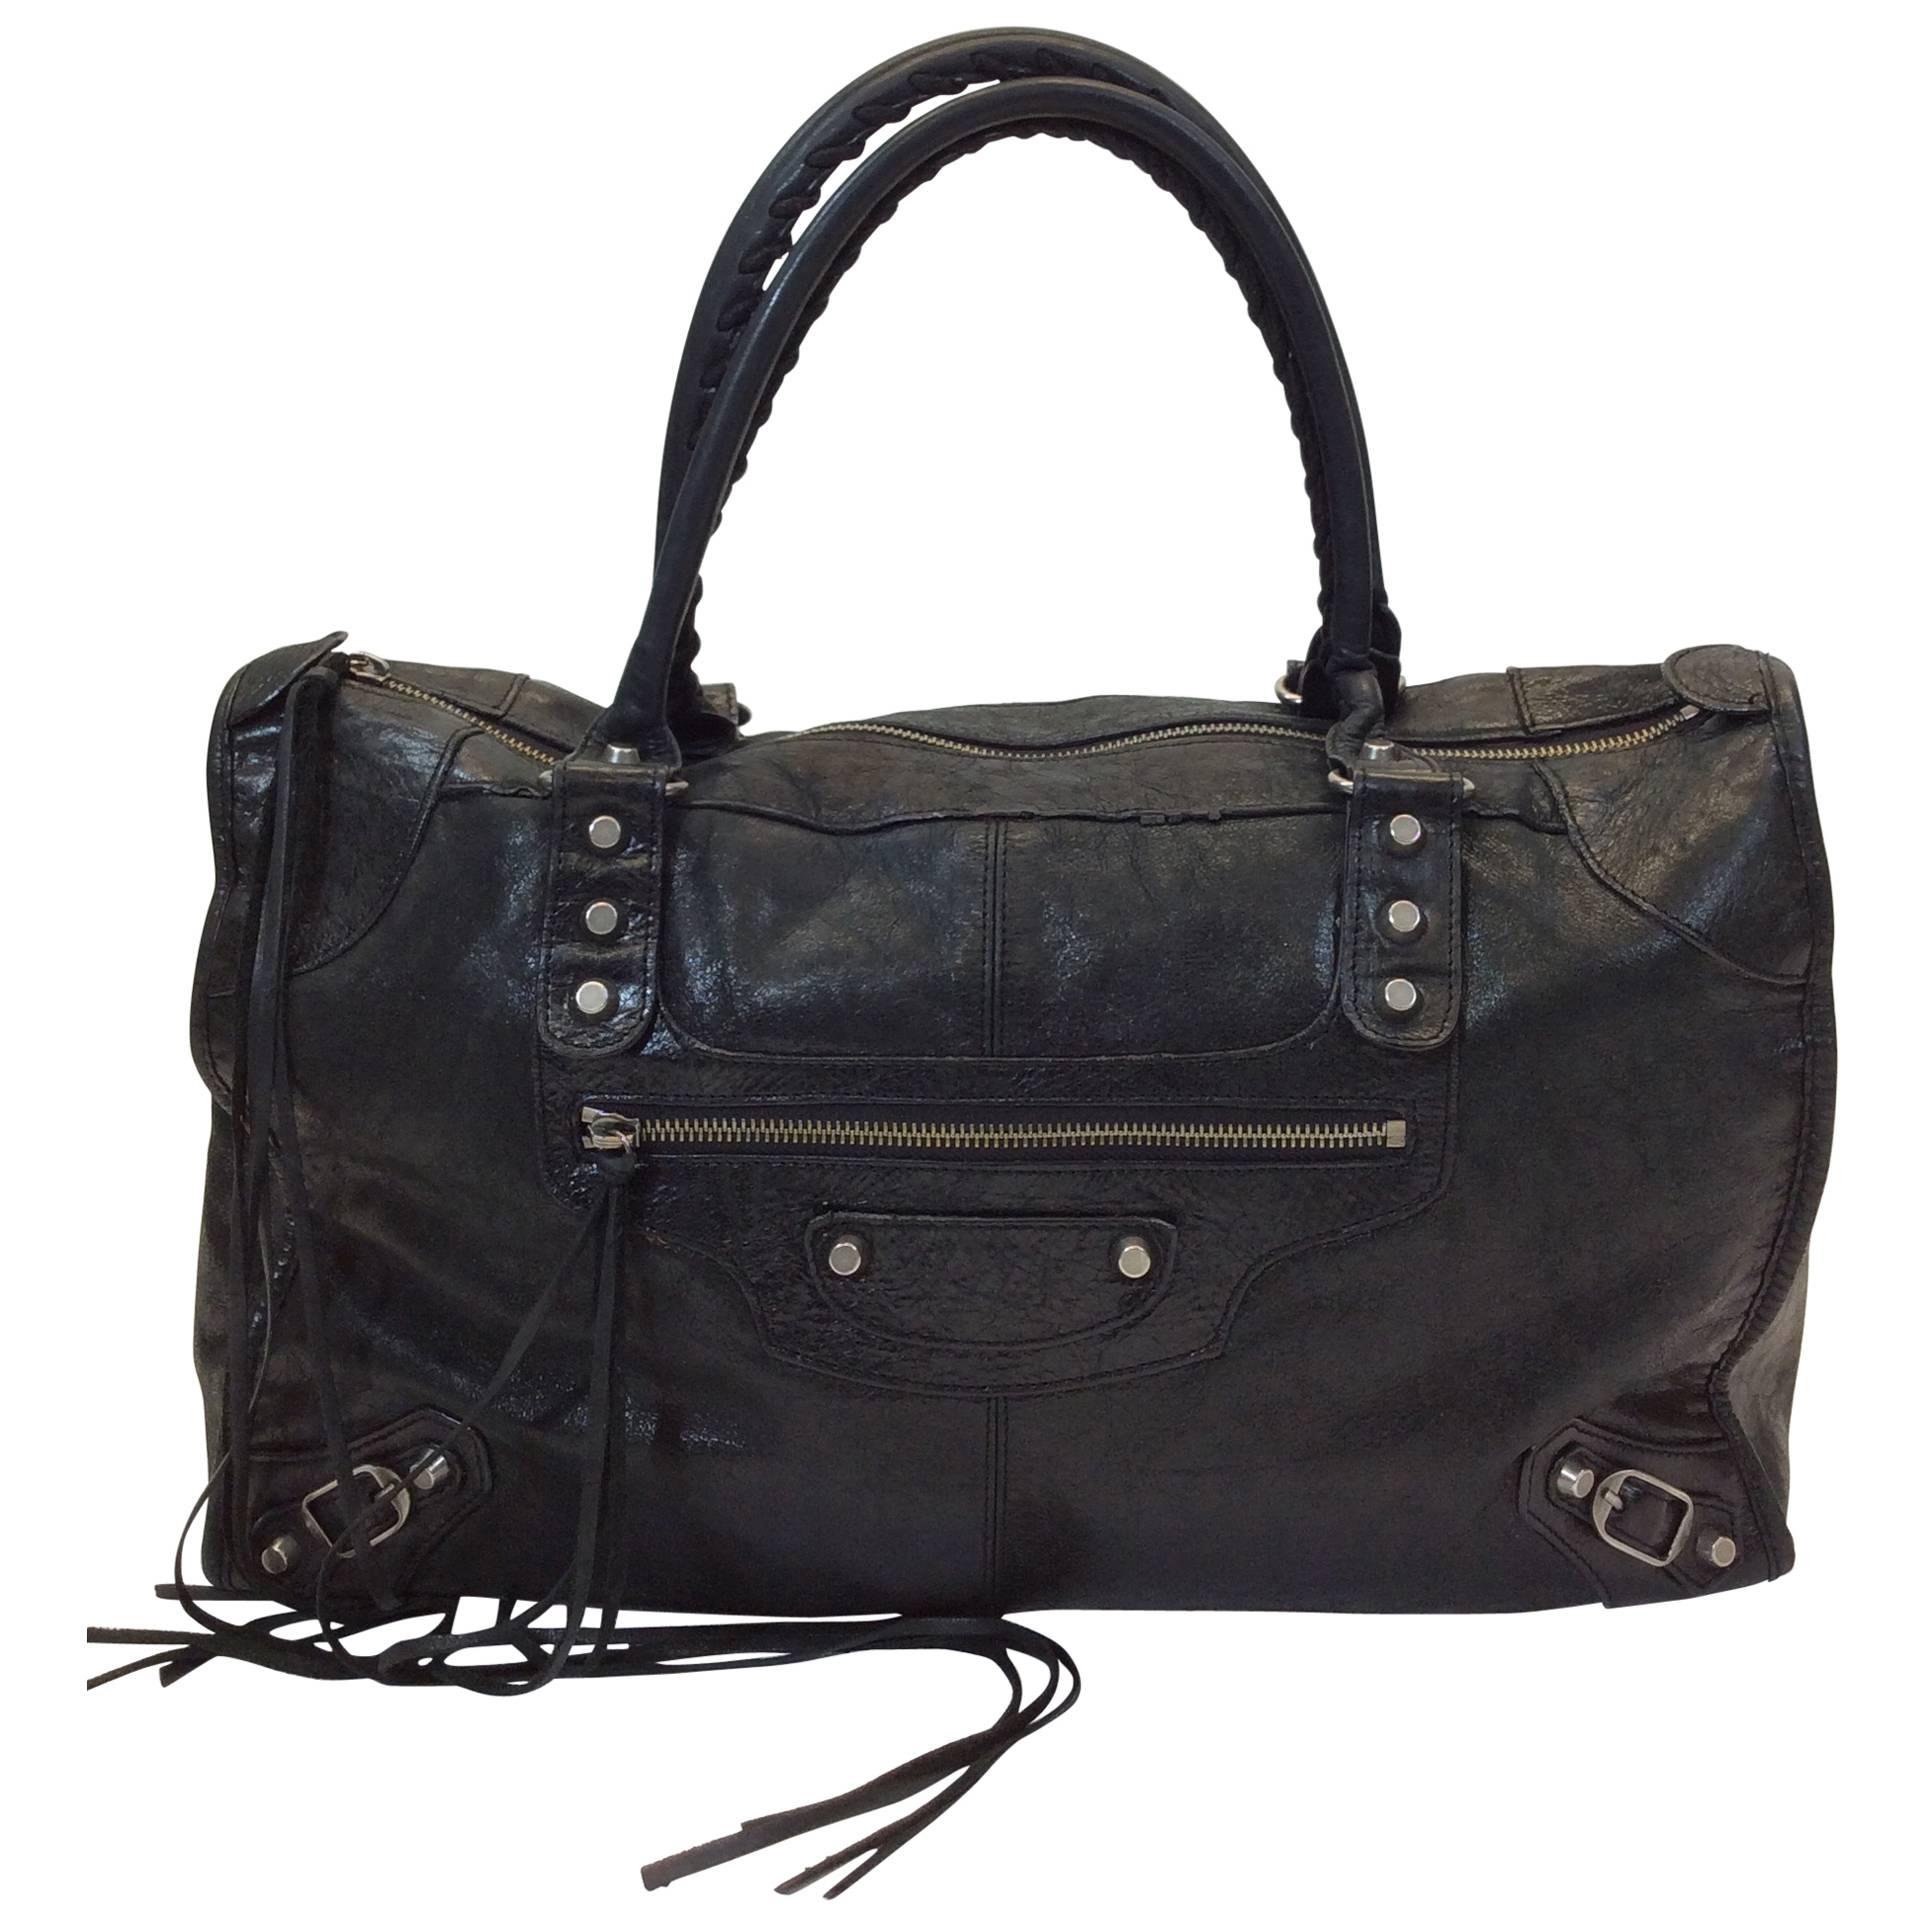 Balenciaga Black Leather Fringe Studded Handbag